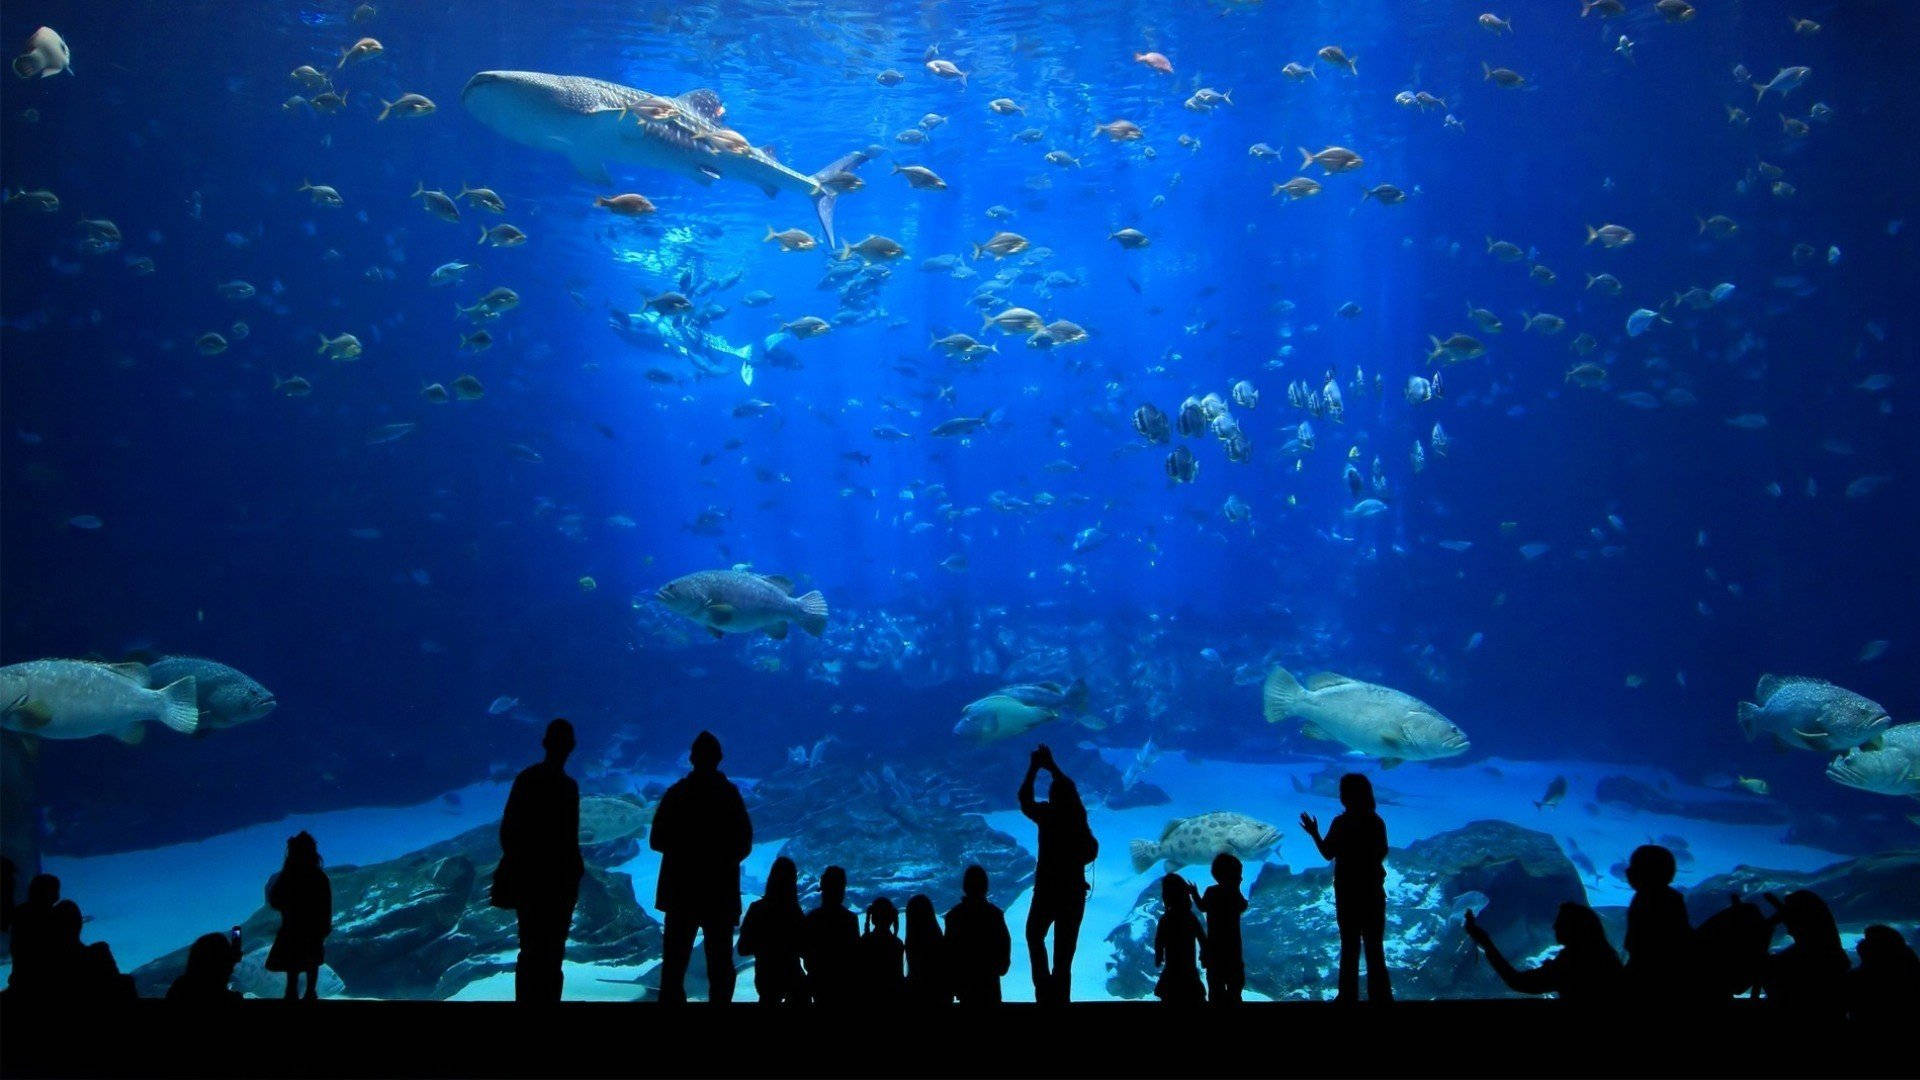 Riesigesmuseum Aquarium Wallpaper